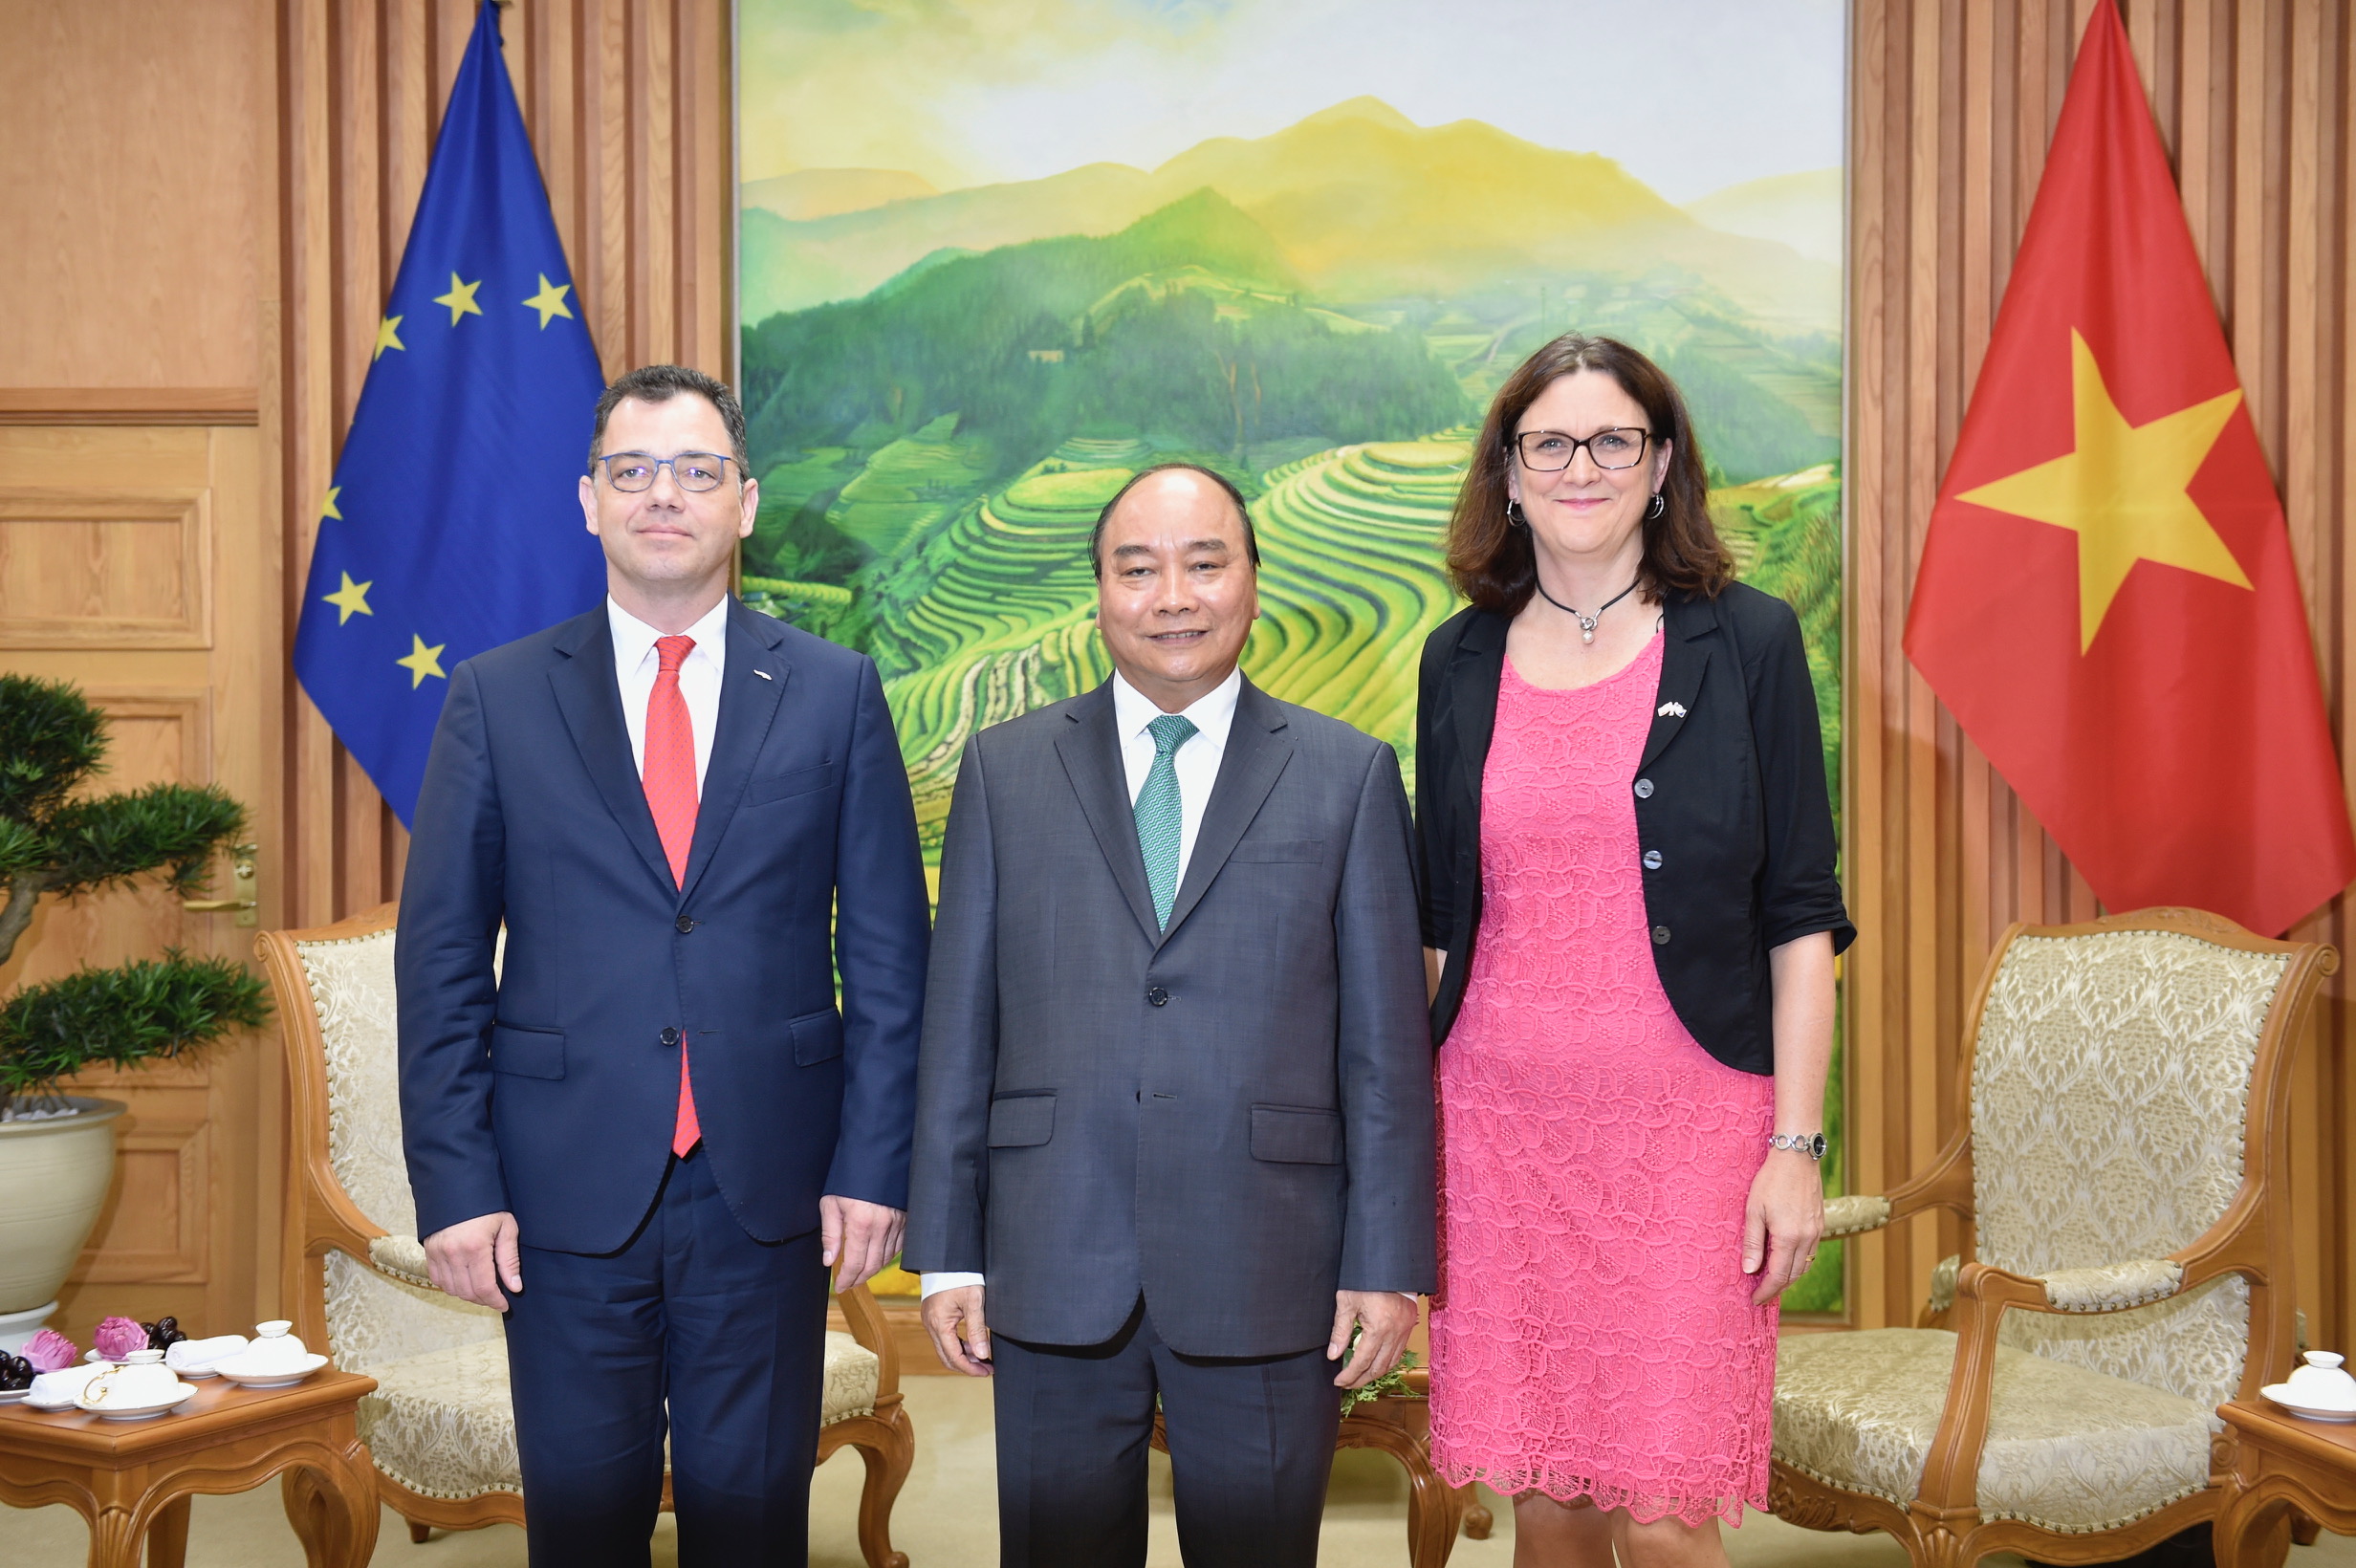 Hiệp định EVFTA và Hiệp định IPA giữa Việt Nam và Liên minh Châu Âu đã được ký kết - Ảnh 5